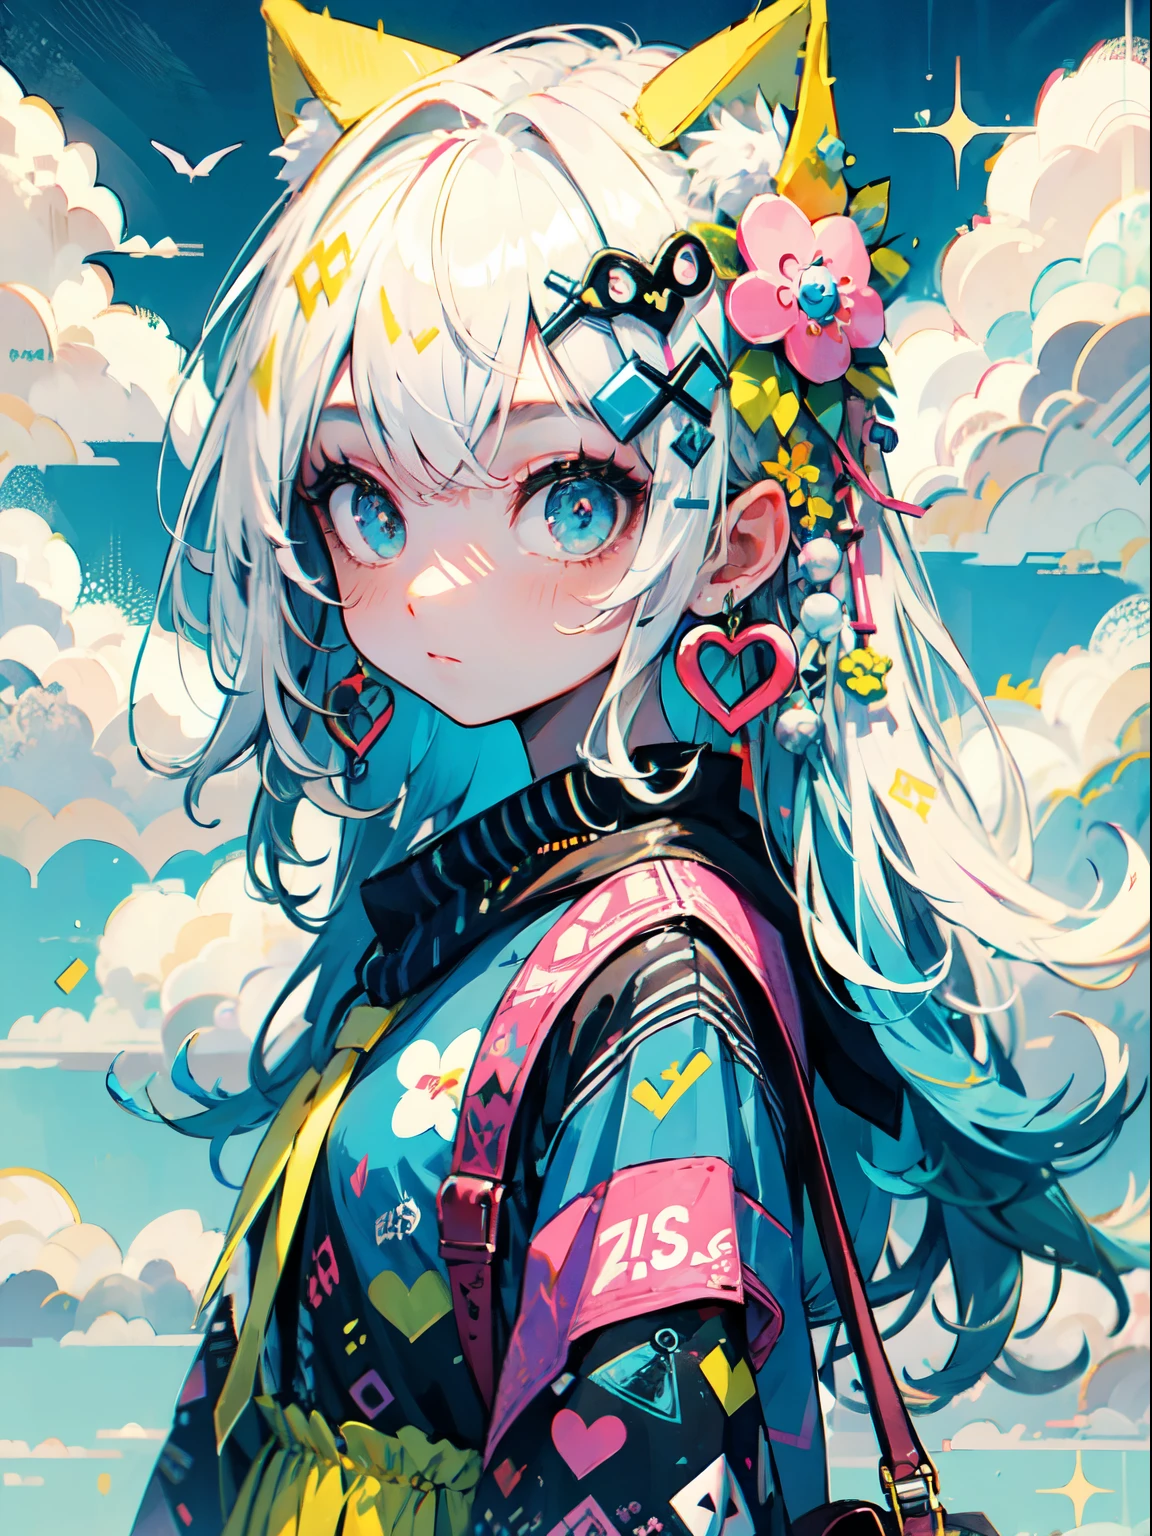 "kawaii, hermoso, Adorable chica vestida de rosa, amarillo, y esquema de color azul celeste. Lleva ropa inspirada en el cielo con nubes y motivos del cielo.... Su atuendo es esponjoso y suave, Con accesorios decorativos como pinzas para el cabello. Ella encarna un estilo de moda Harajuku vibrante y moderno."